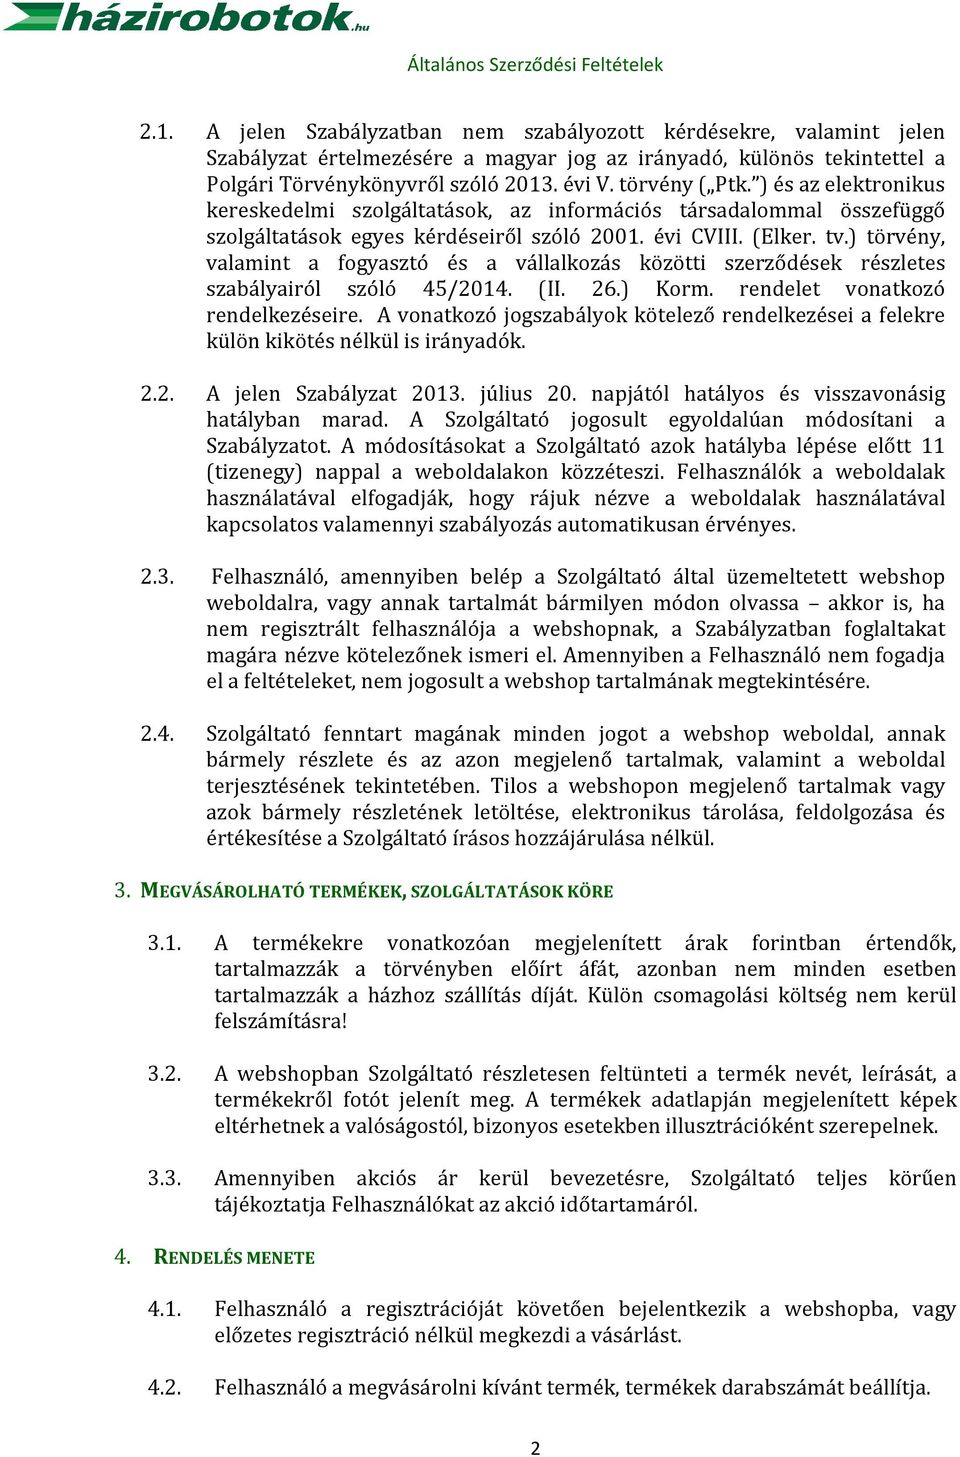 ) törvény, valamint a fogyasztó és a vállalkozás közötti szerződések részletes szabályairól szóló 45/2014. (II. 26.) Korm. rendelet vonatkozó rendelkezéseire.